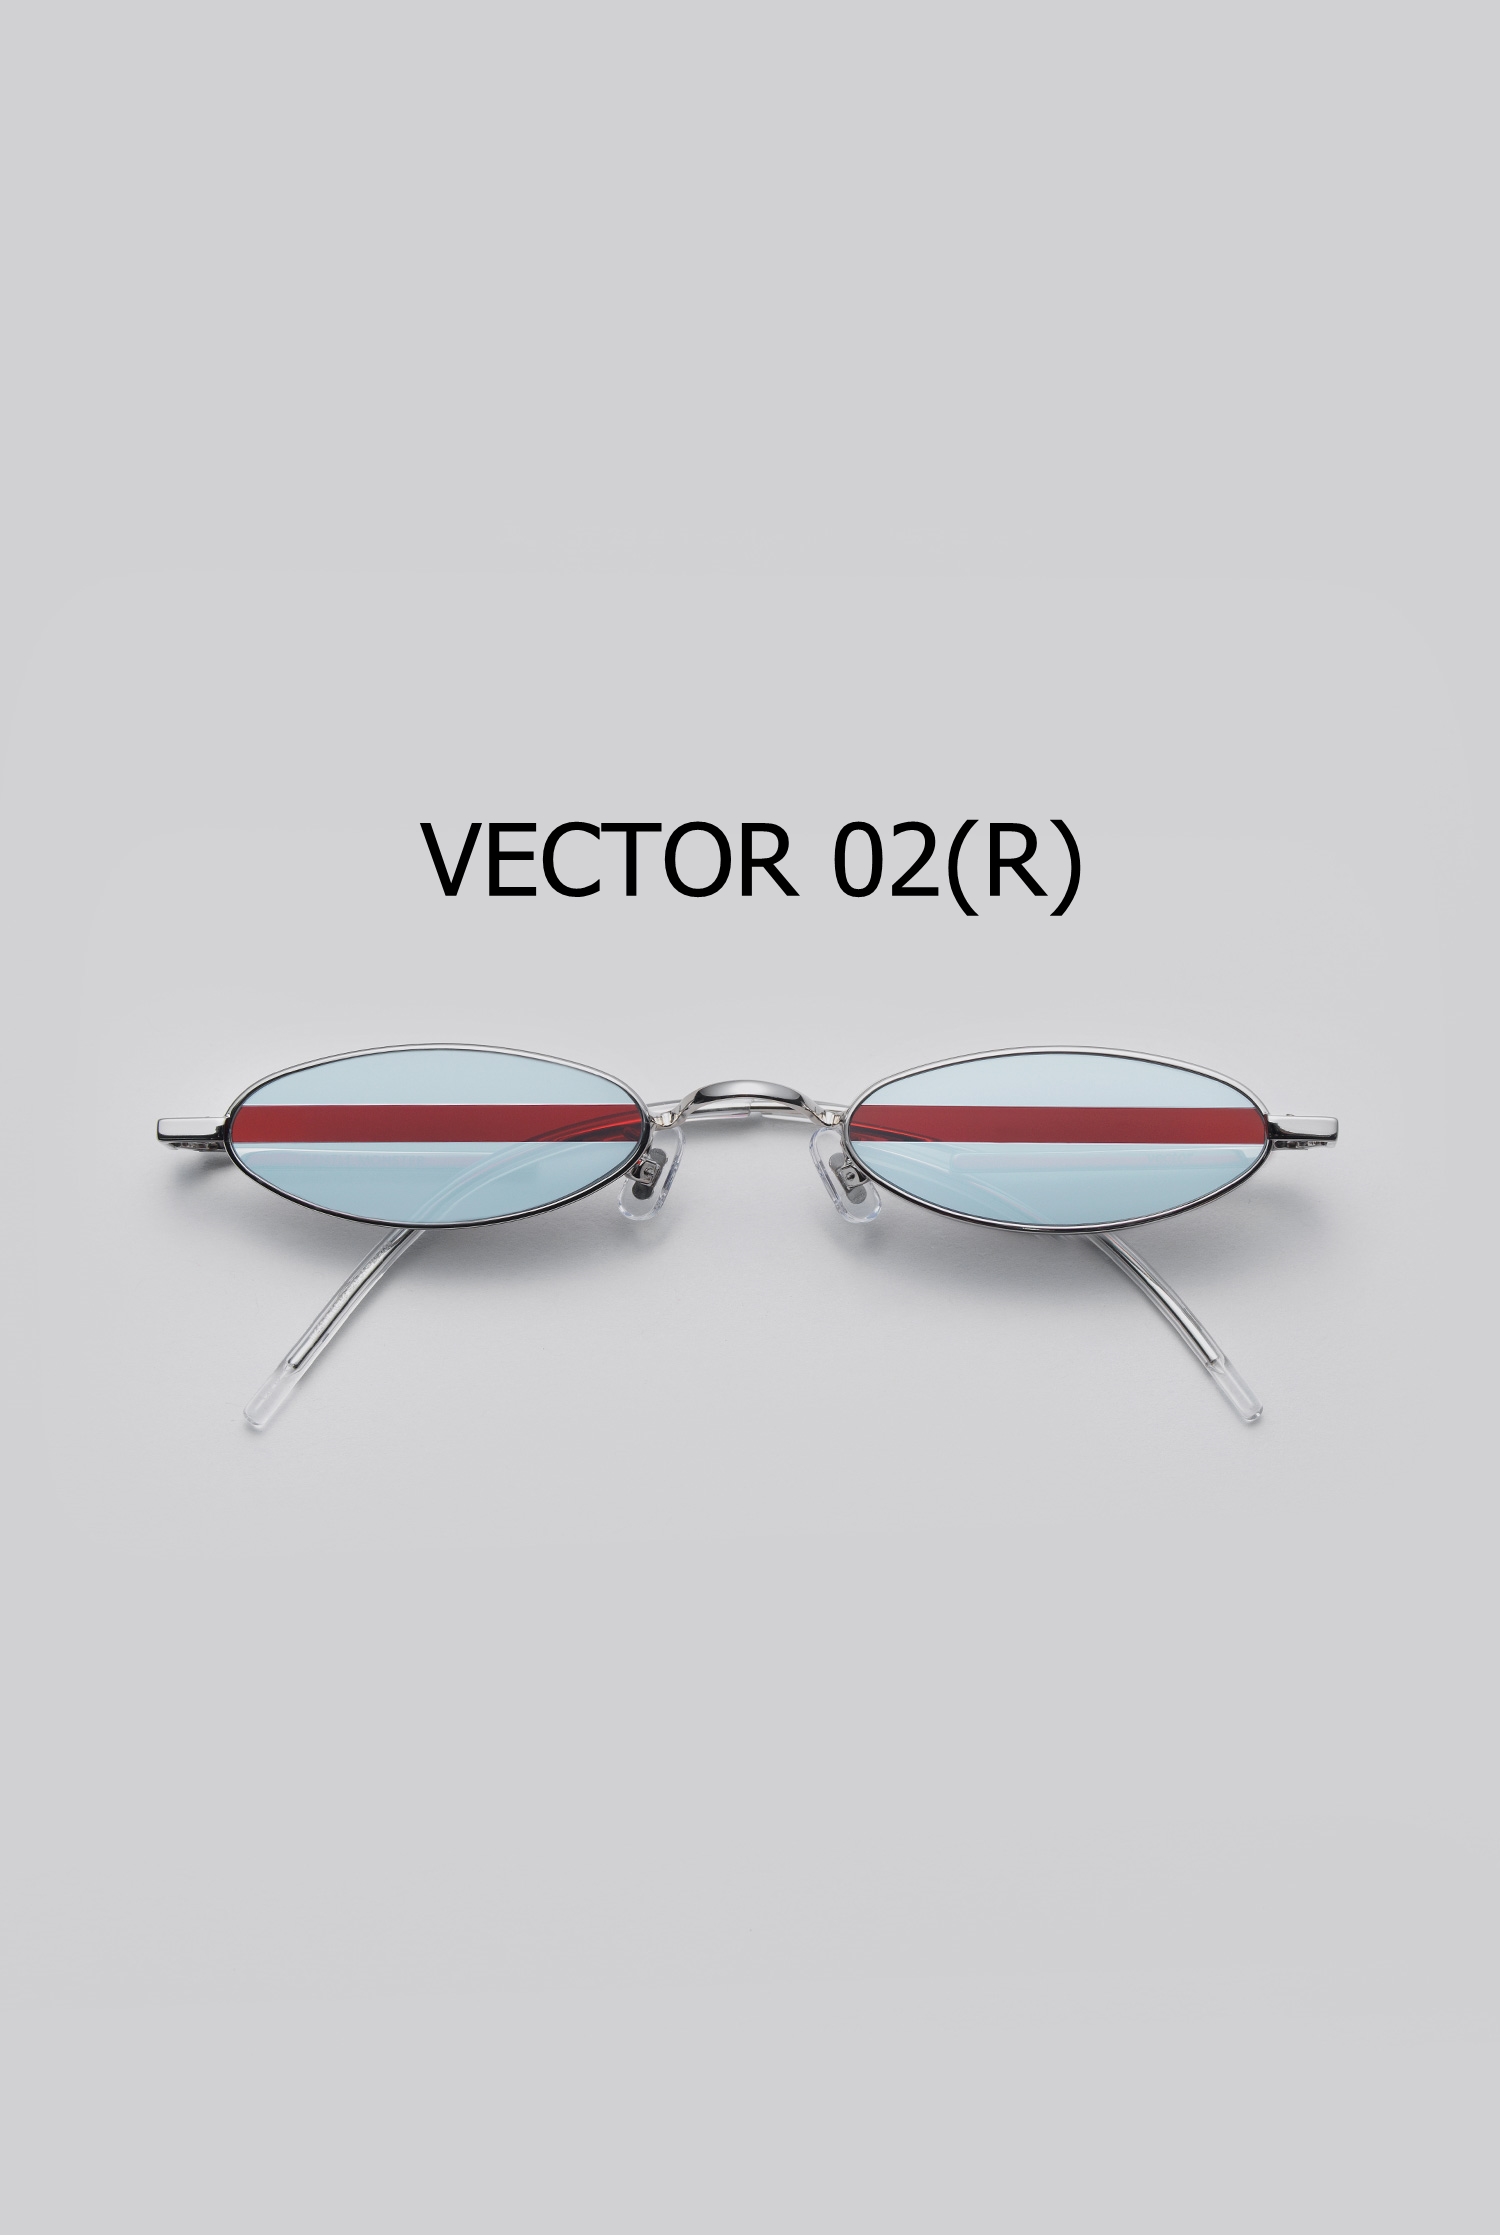 VECTOR 02(R)